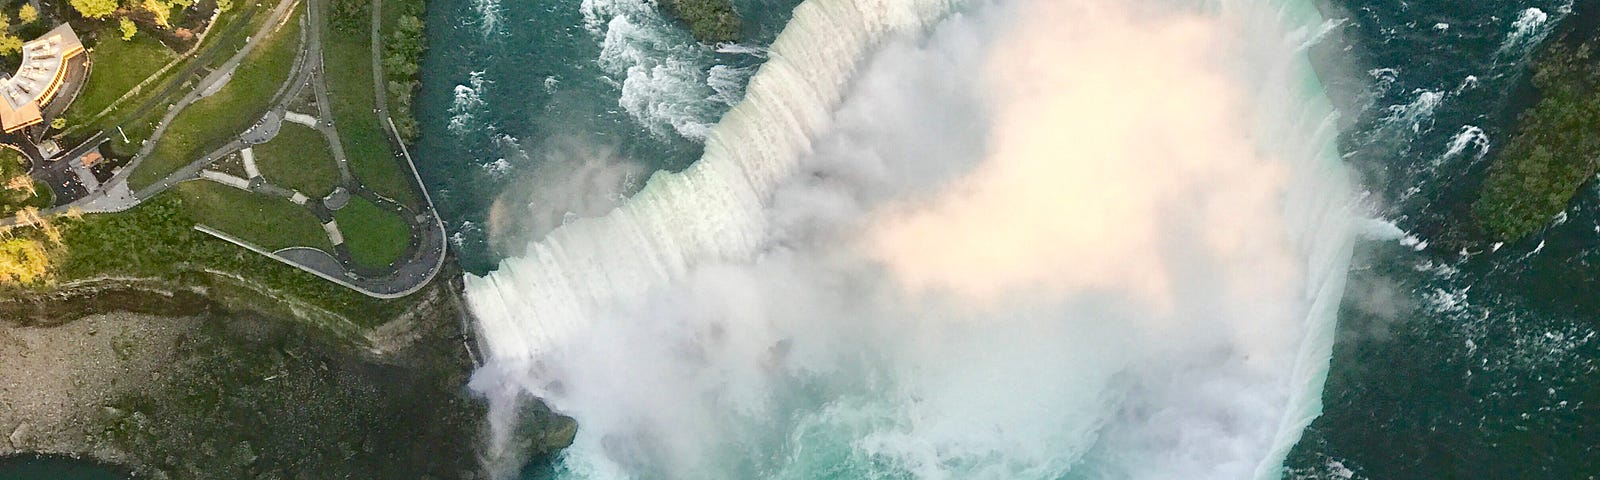 An ariel view of Niagara Falls.